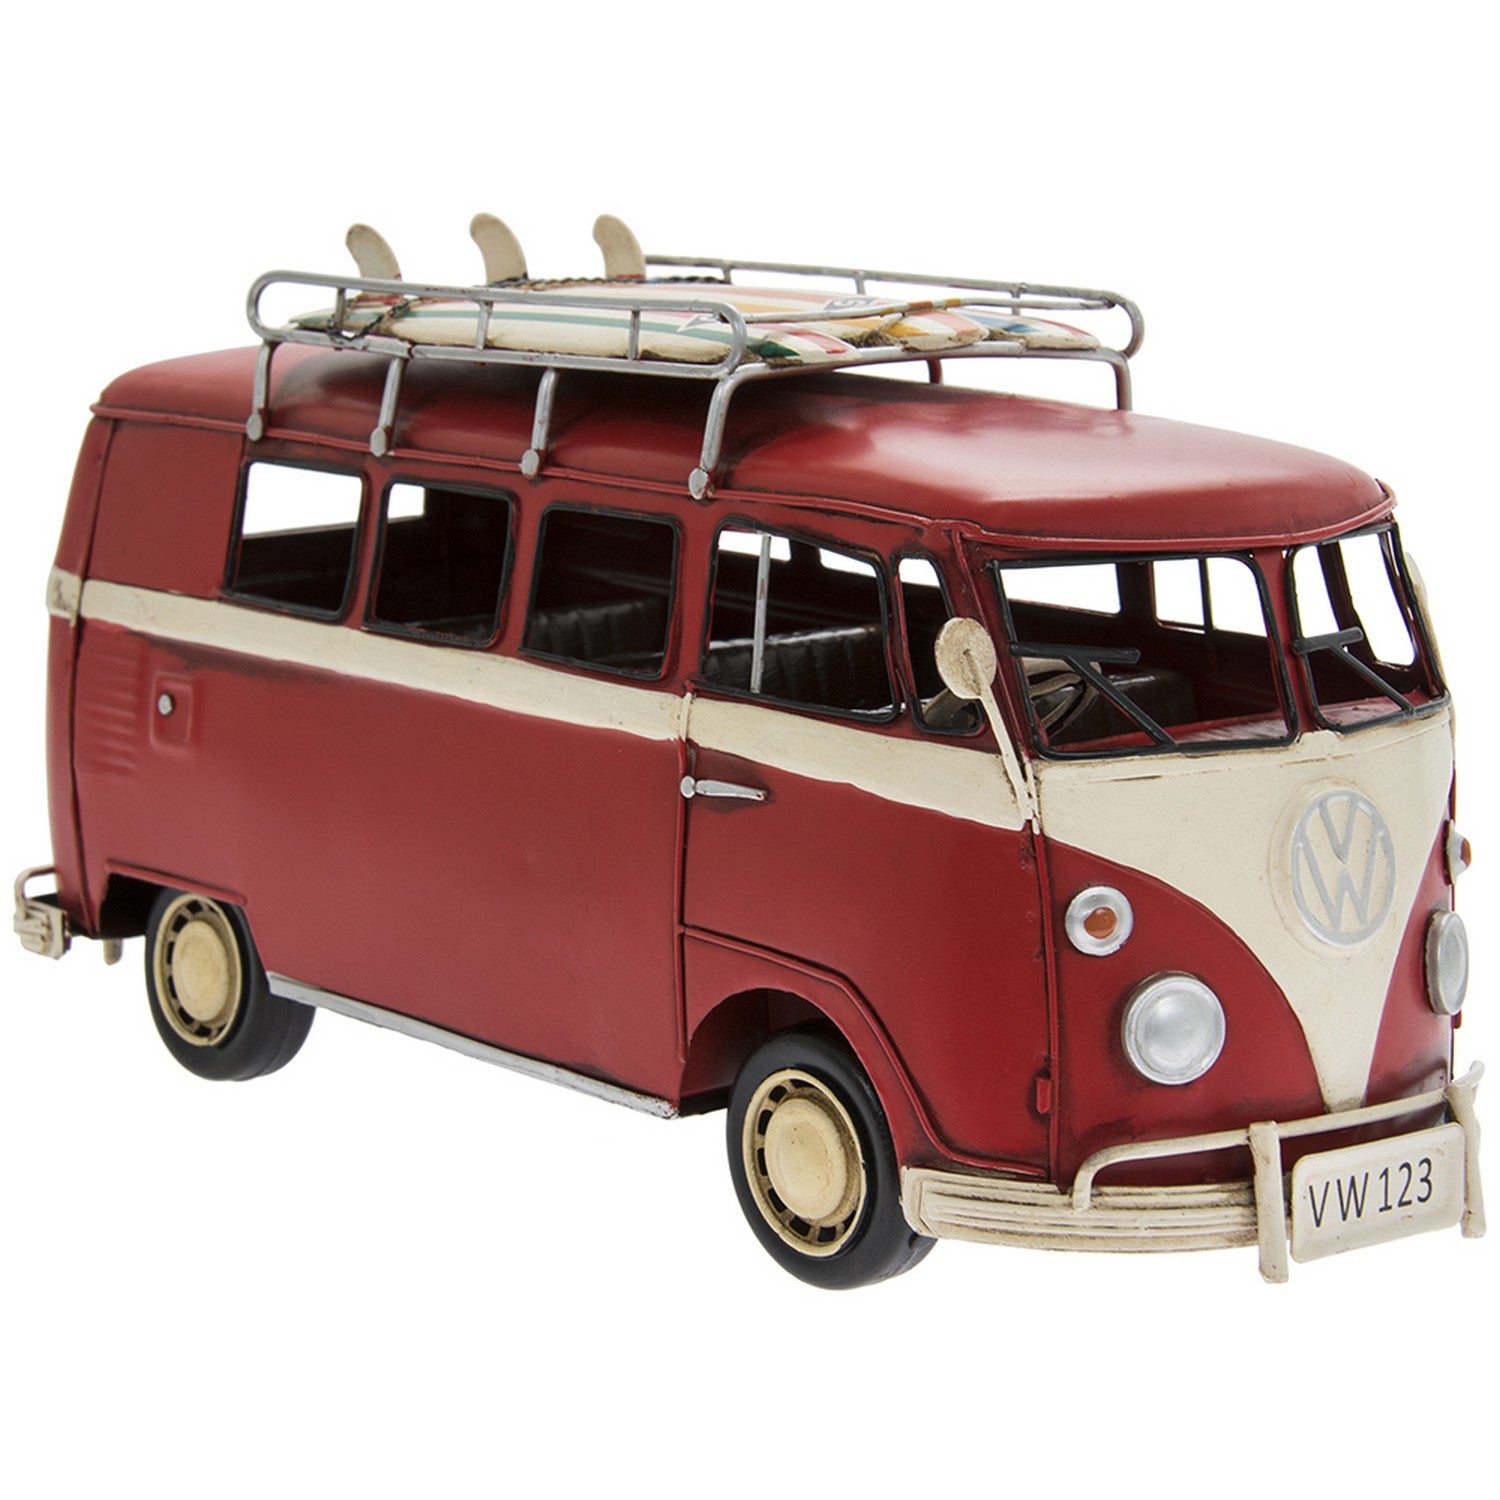 Vintage Red Volkswagen Camper Van